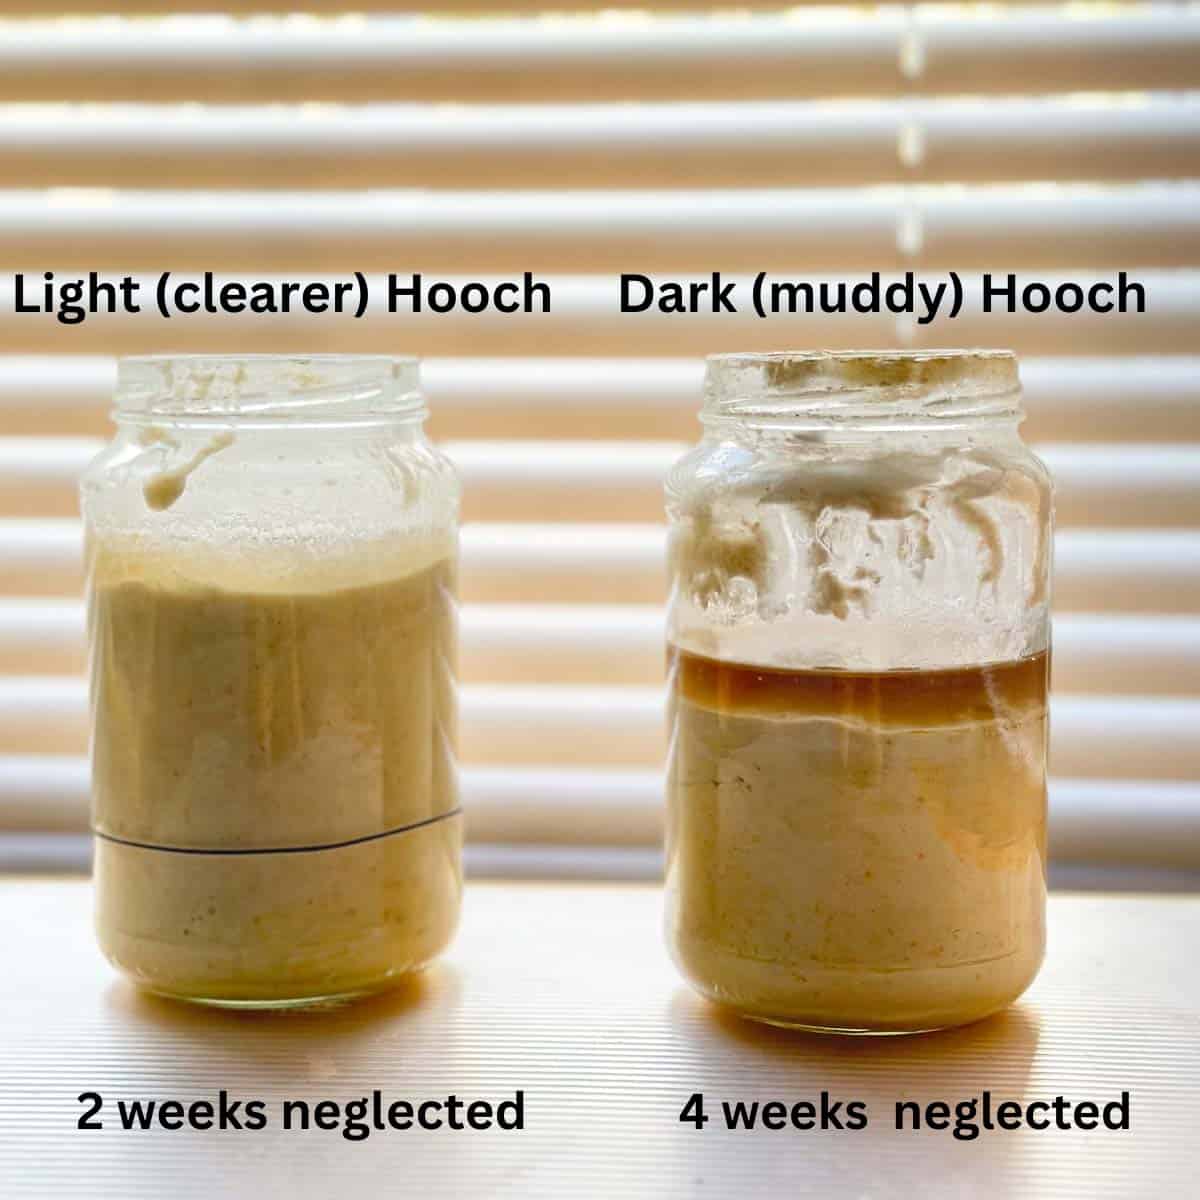 light and dark hooch jars kept side by side for comparison